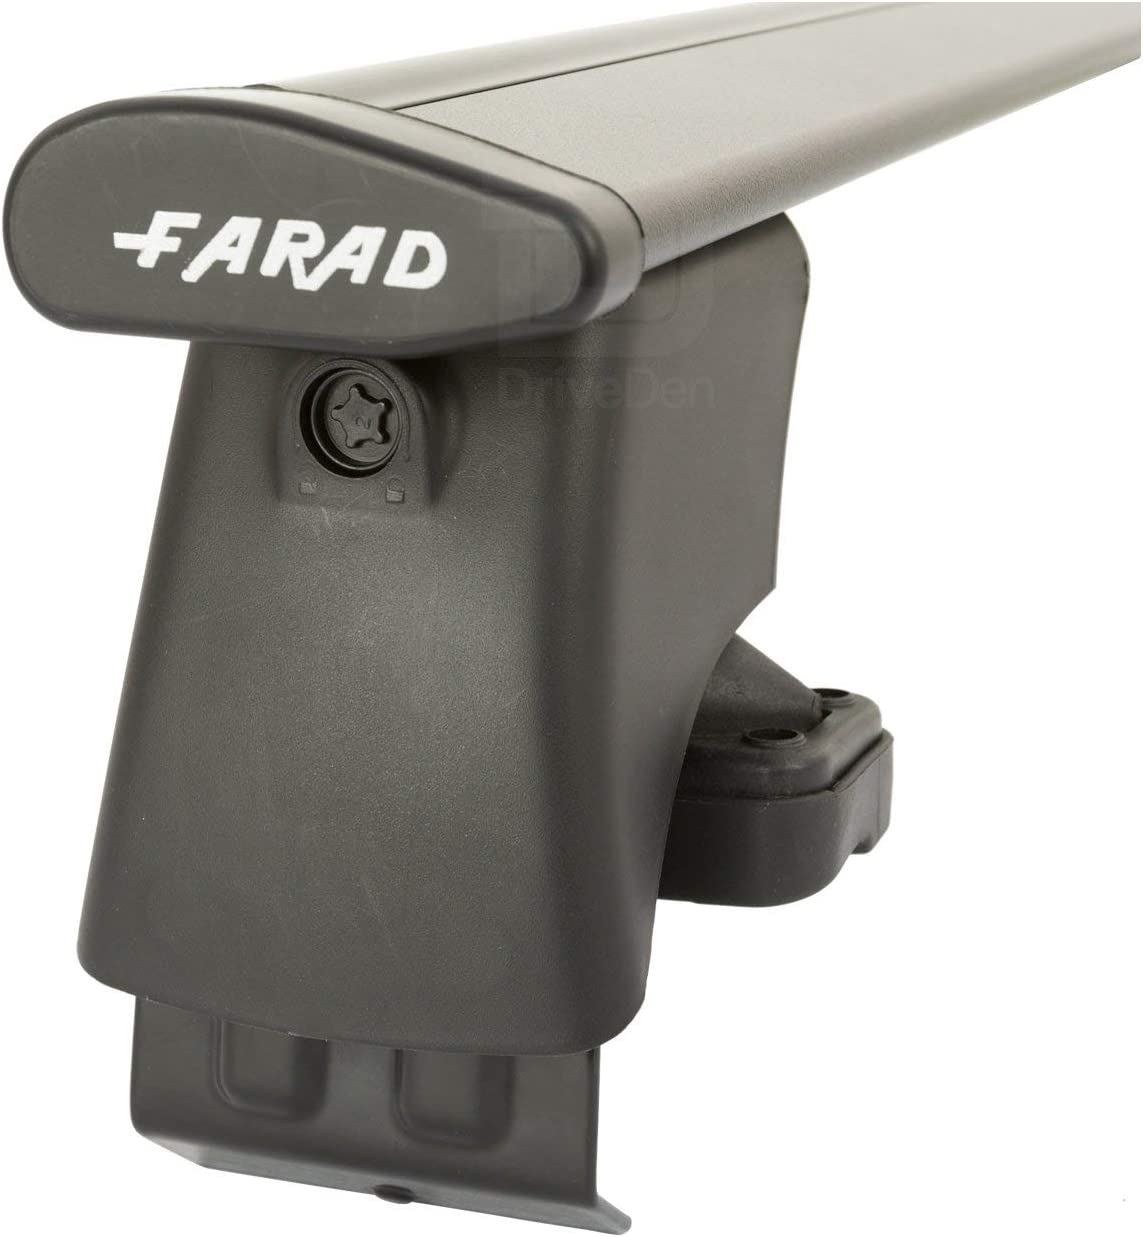 FARAD-Kit H2 per barre portatutto - Fiat Punto 2012> (senza corrimano)